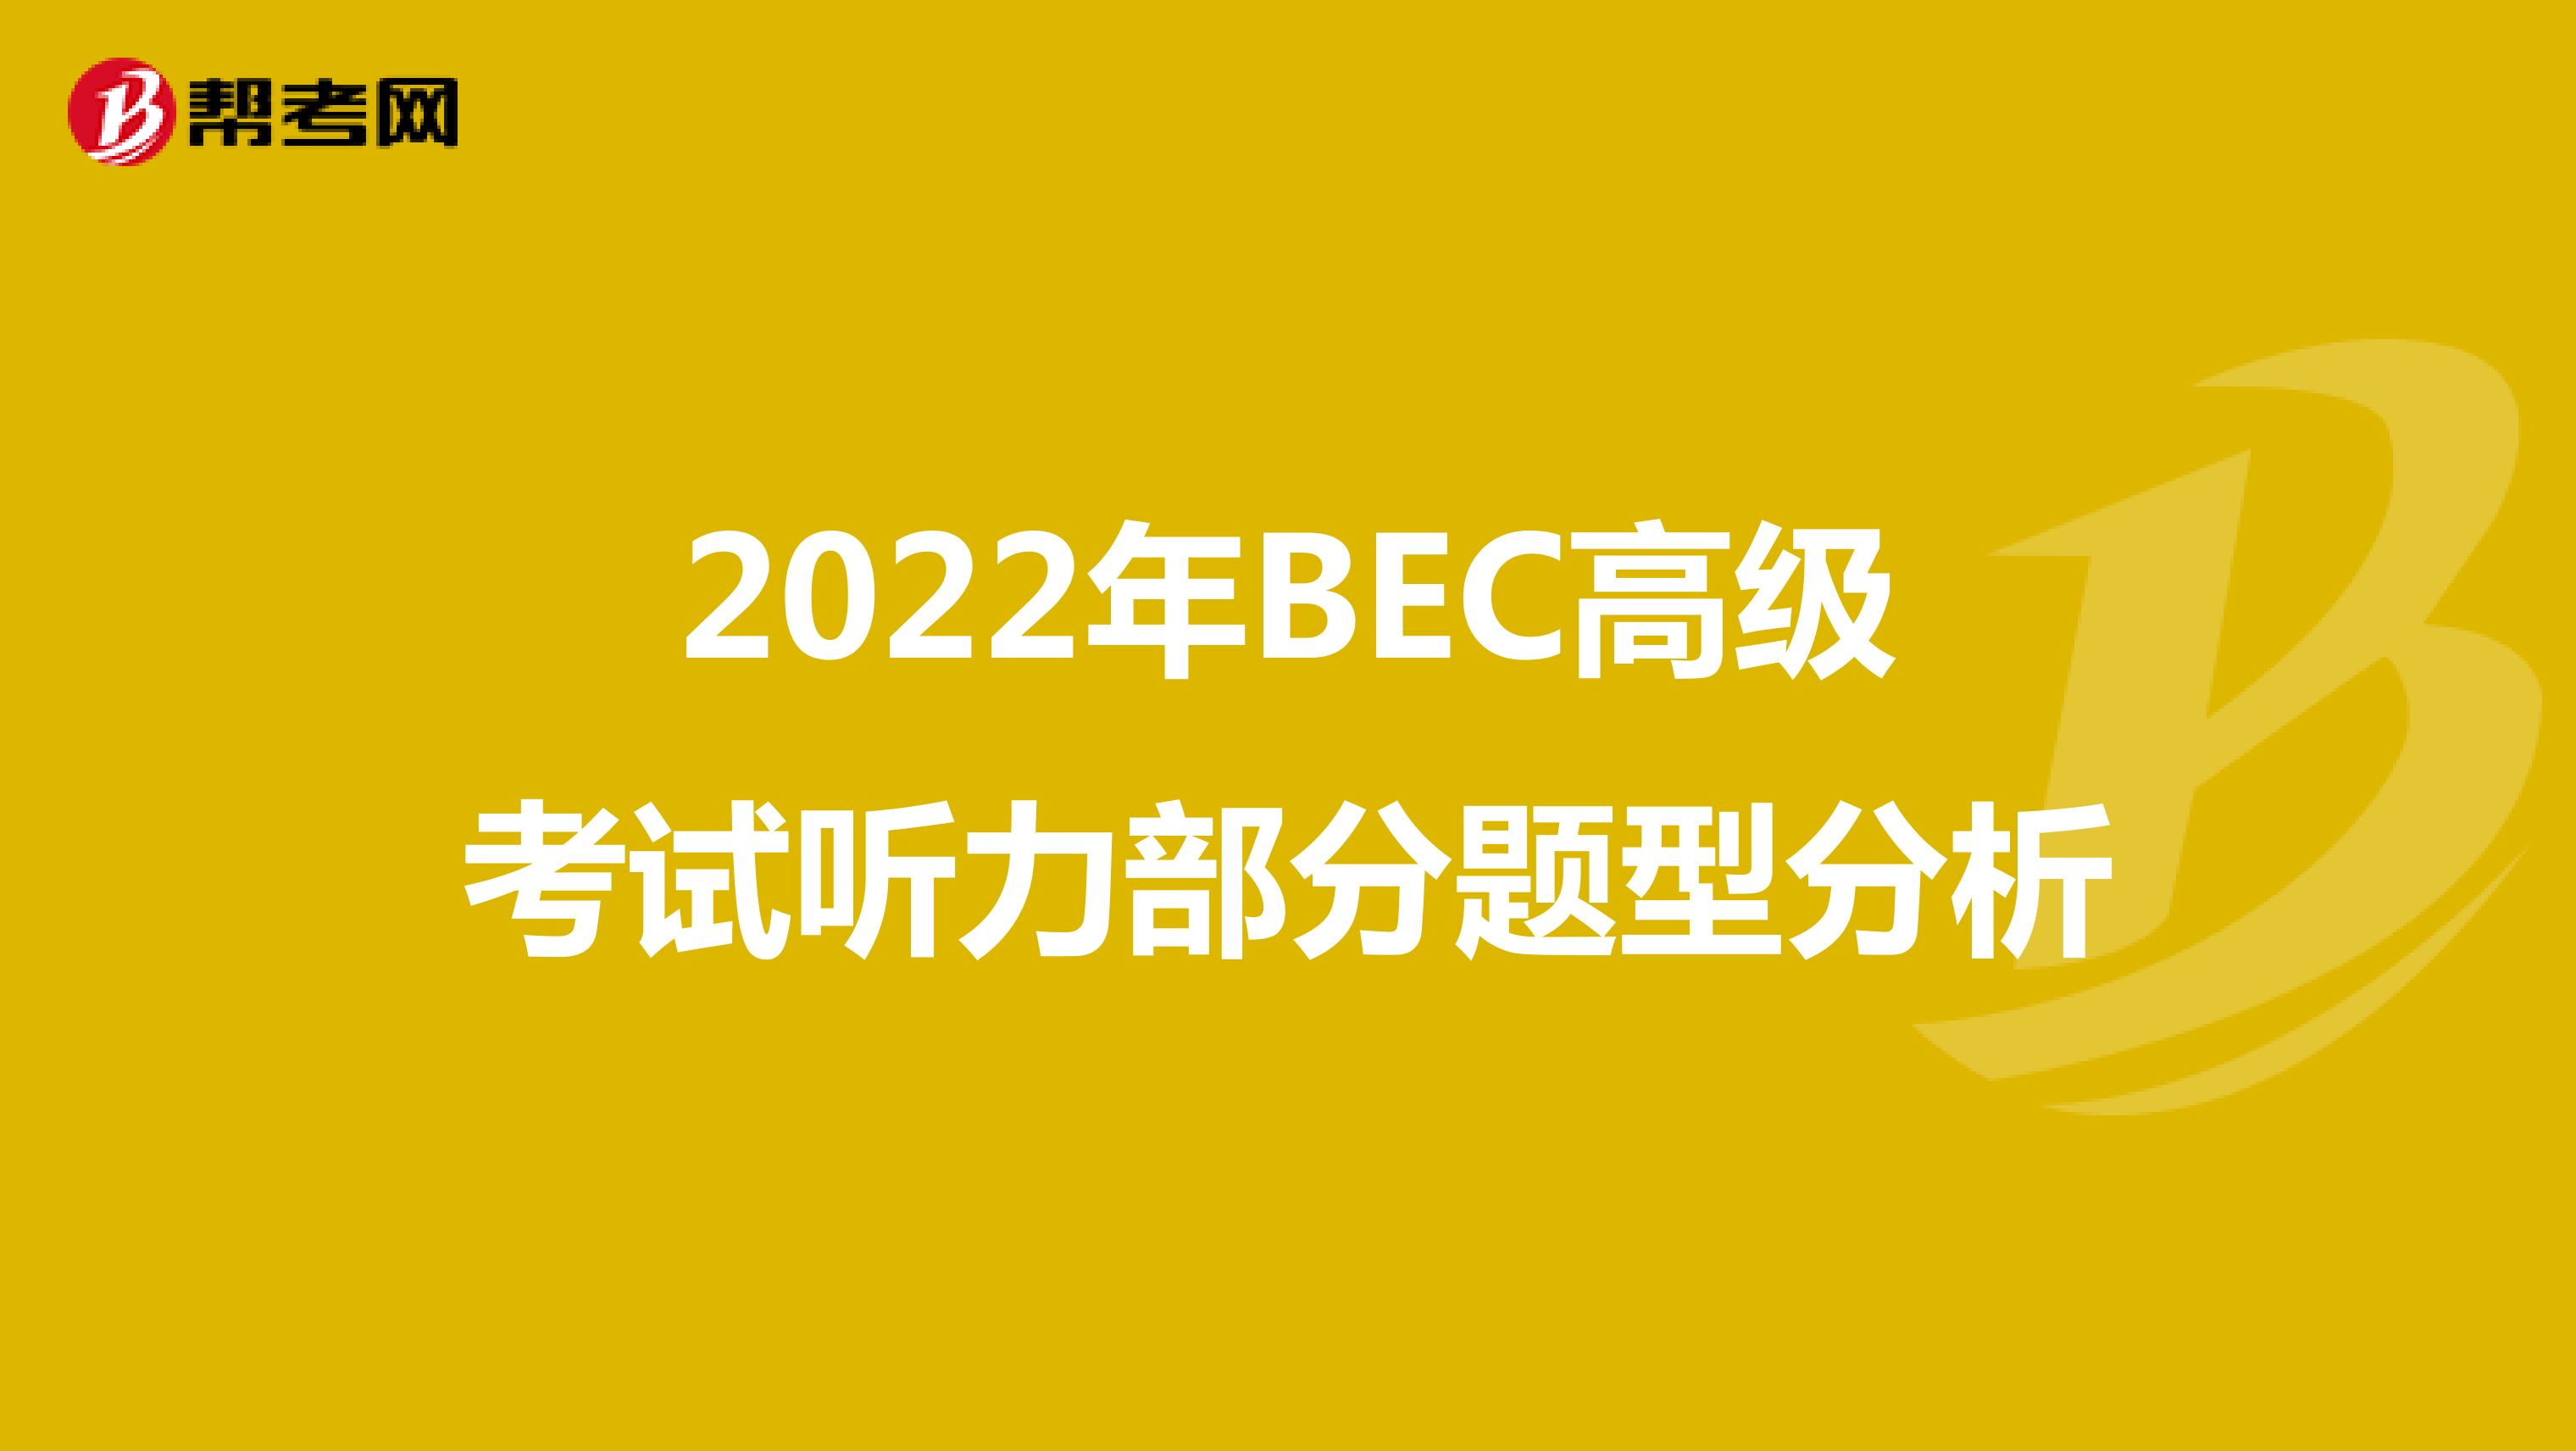 2022年BEC高级考试听力部分题型分析